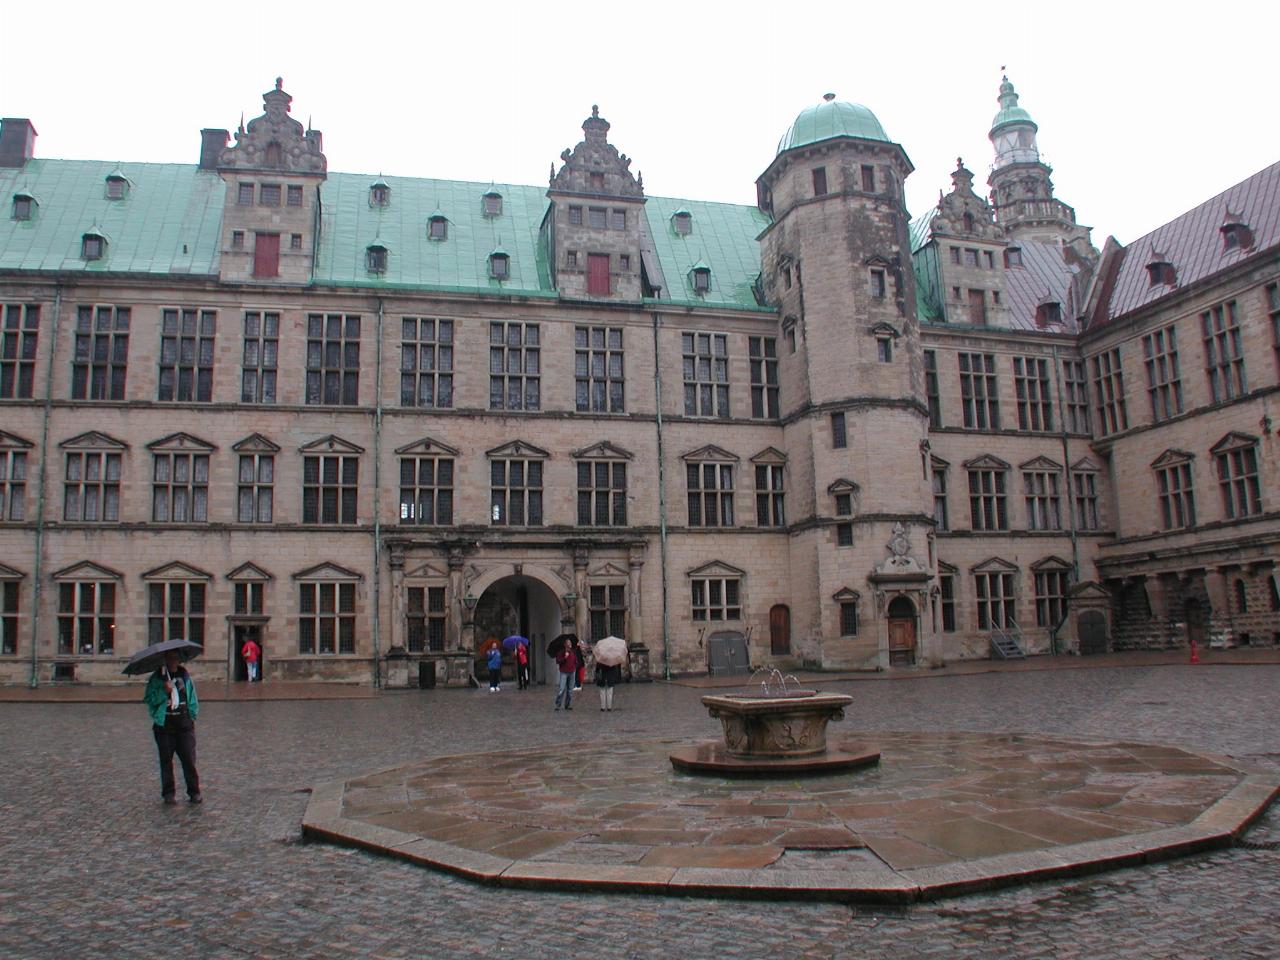 KPLU Viking Jazz: Courtyard of Helsingør Slot (Castle)